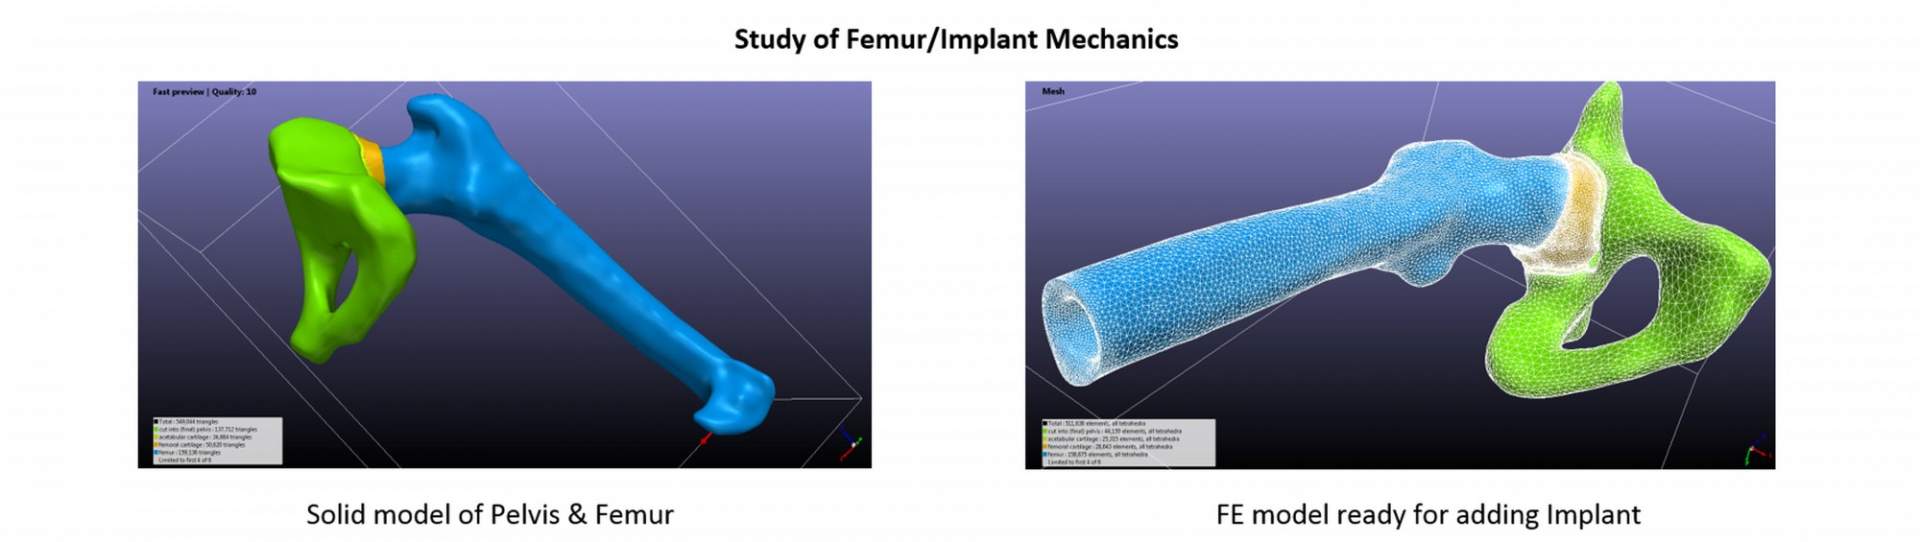 femur implant 01